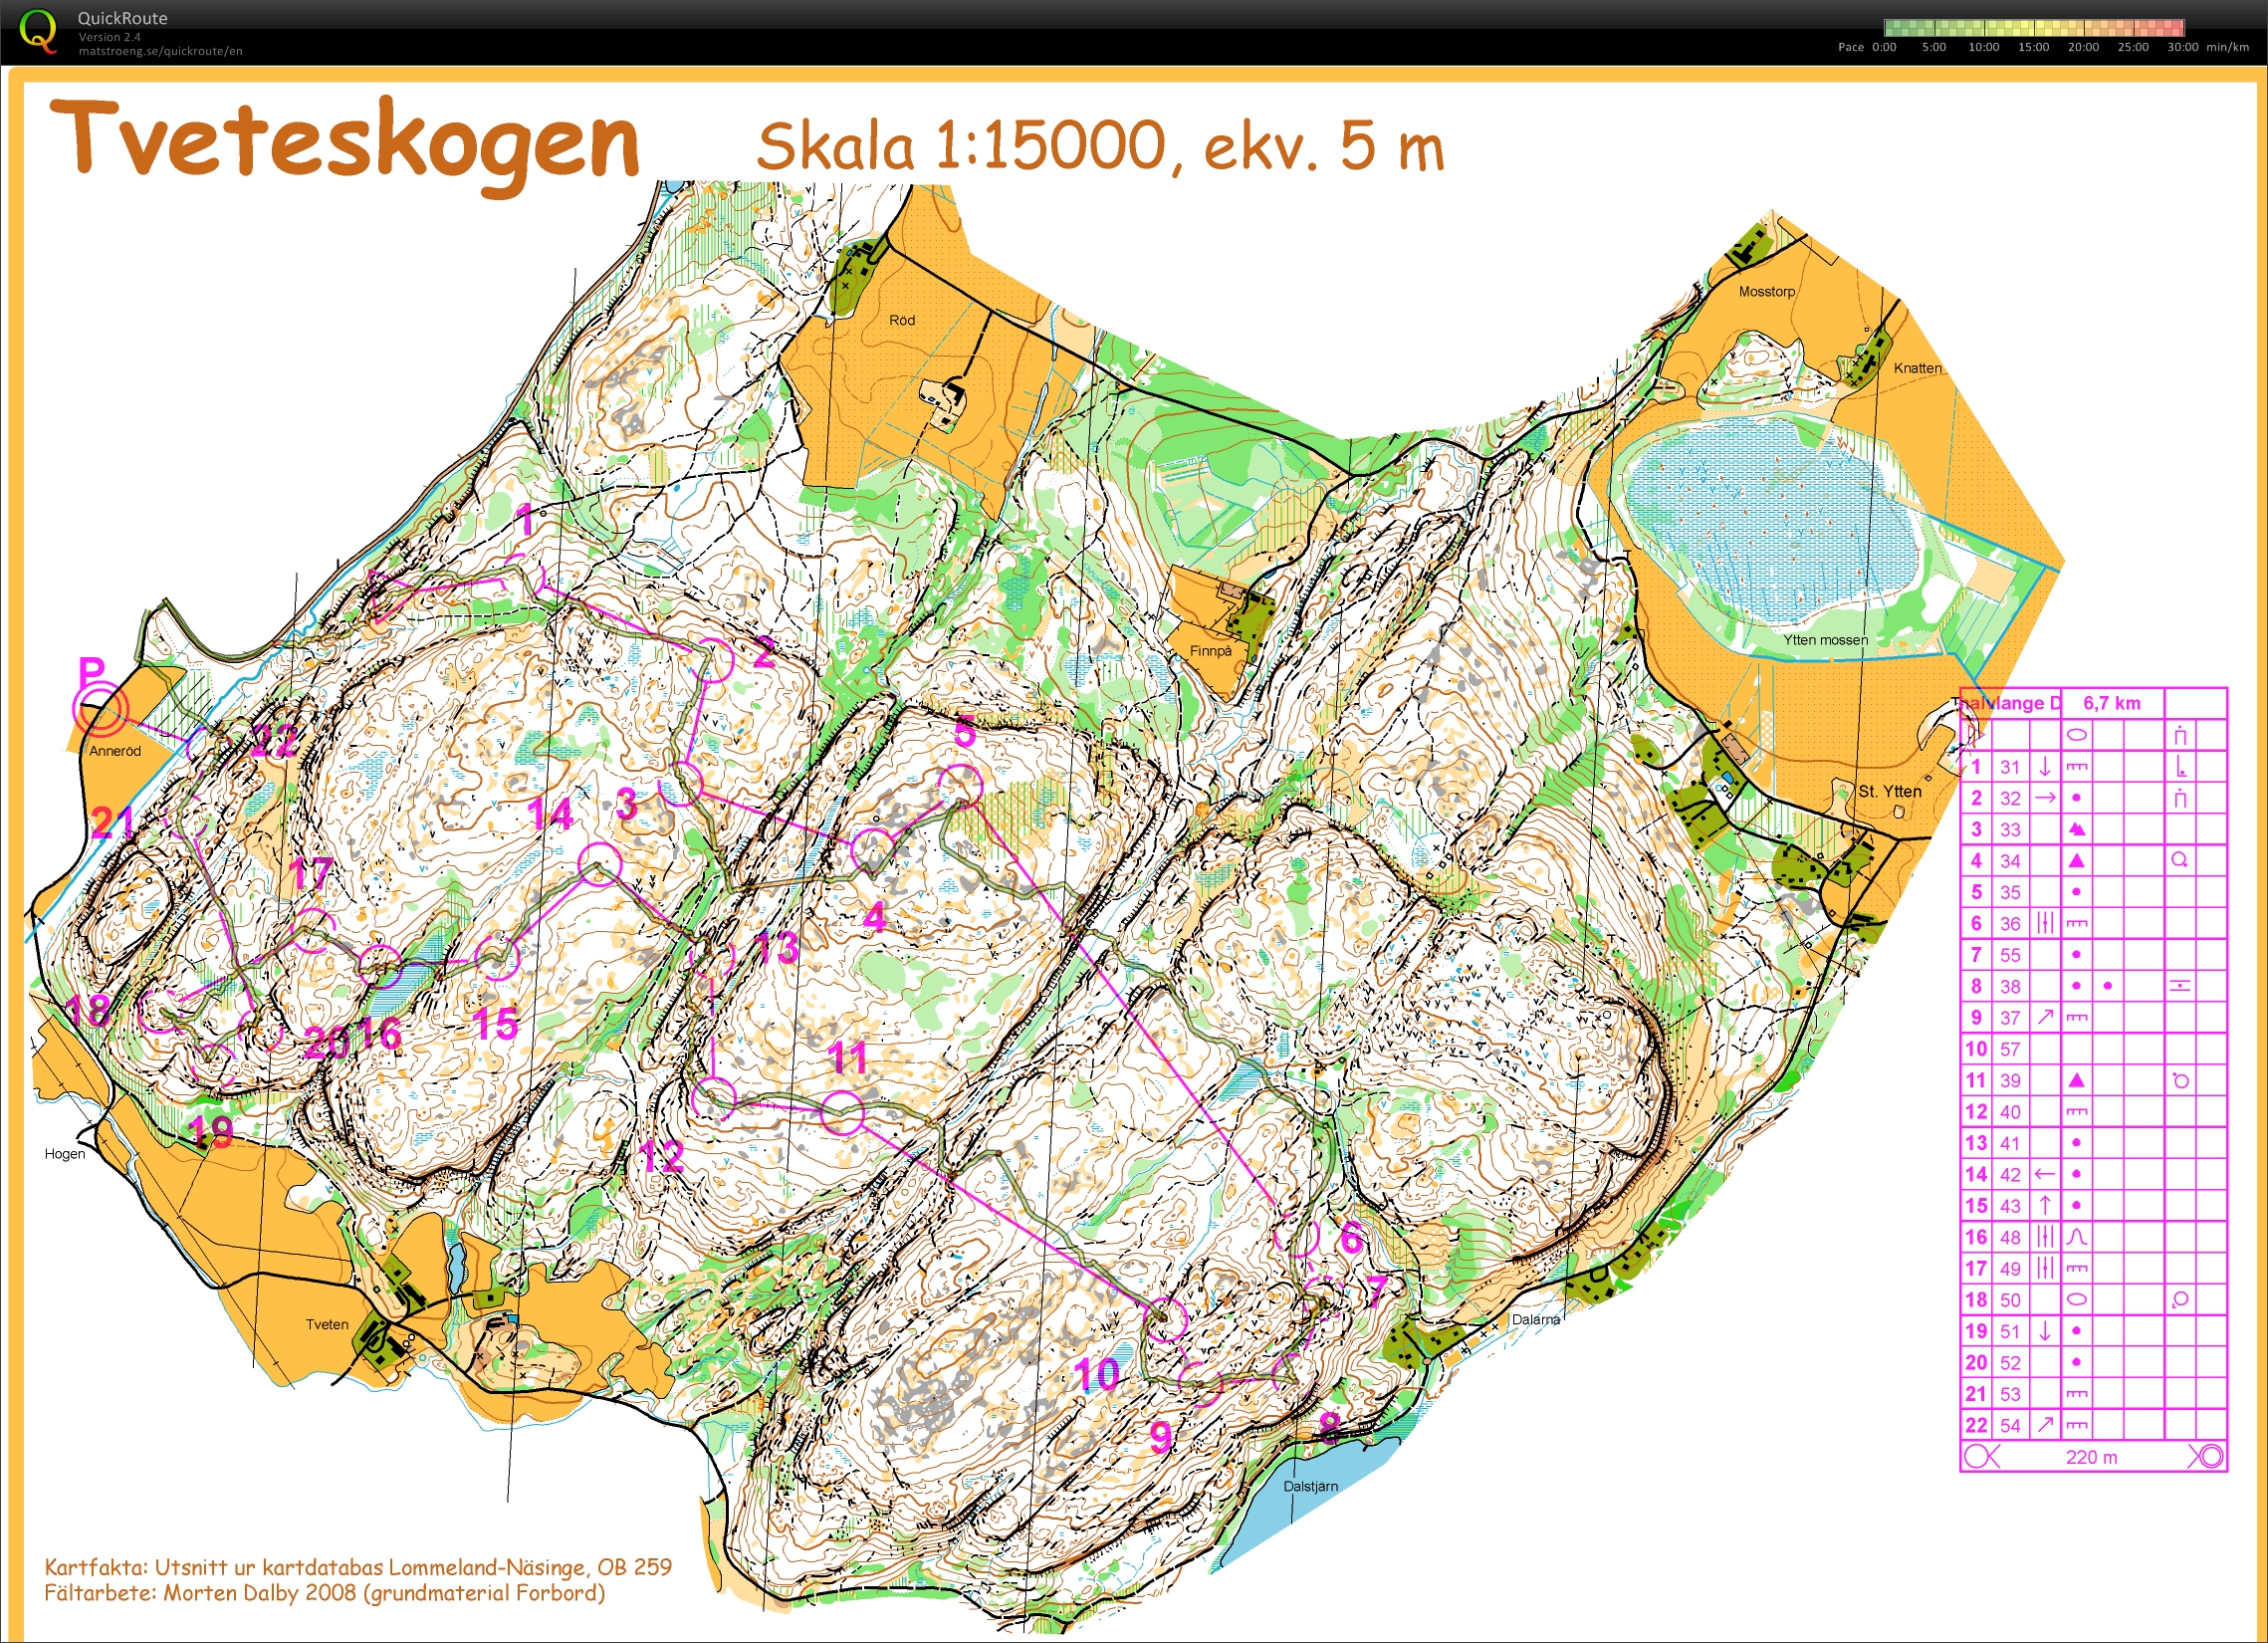 Tveteskogen training with Eva (2014-09-19)